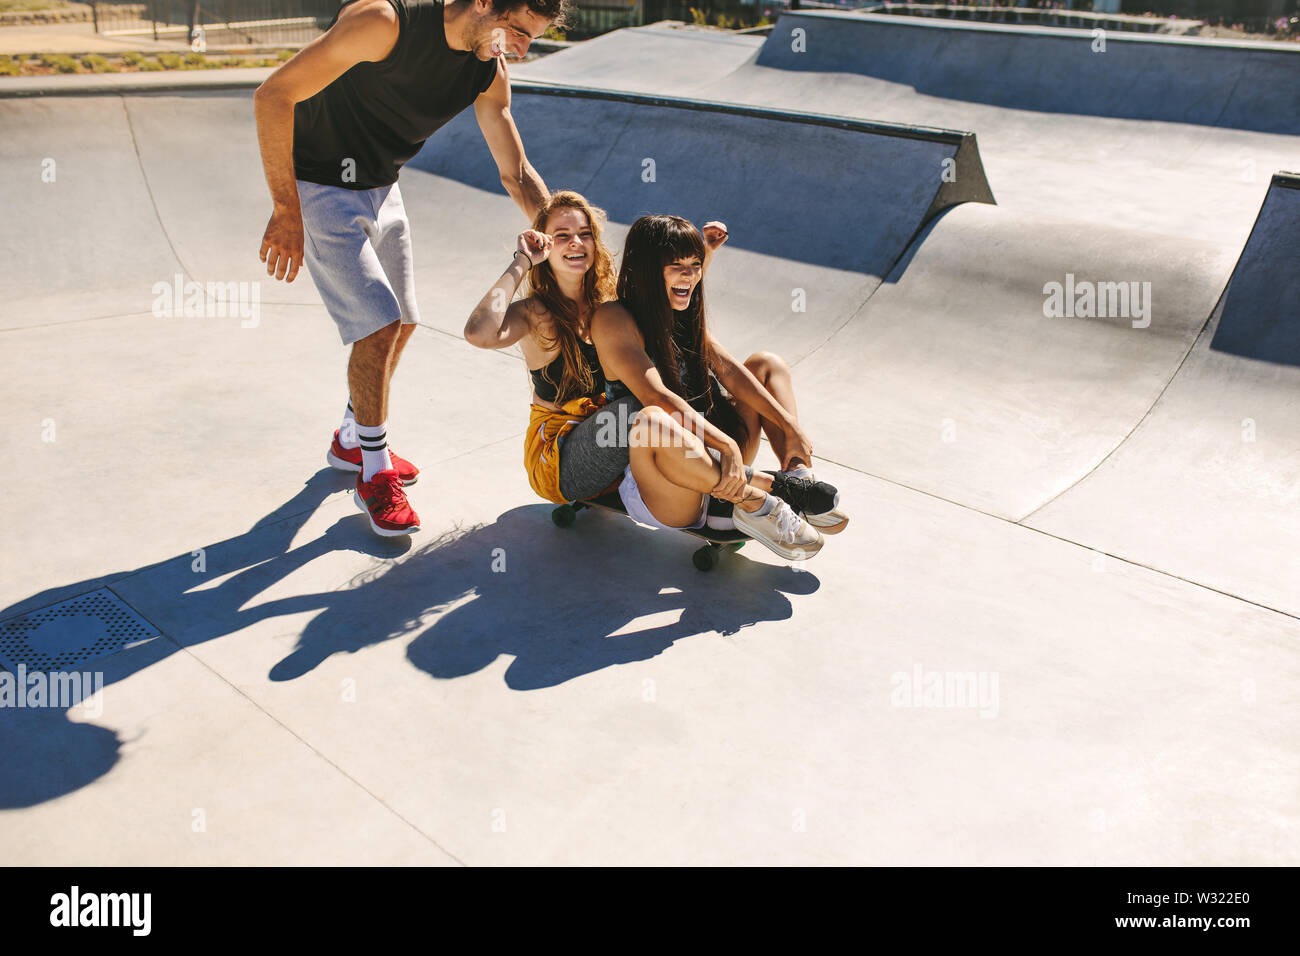 Gruppe von Freunden Spaß an der Skate Park. Junger Mann und zwei Mädchen spielen mit einem Skateboard, Skate Park. Stockfoto